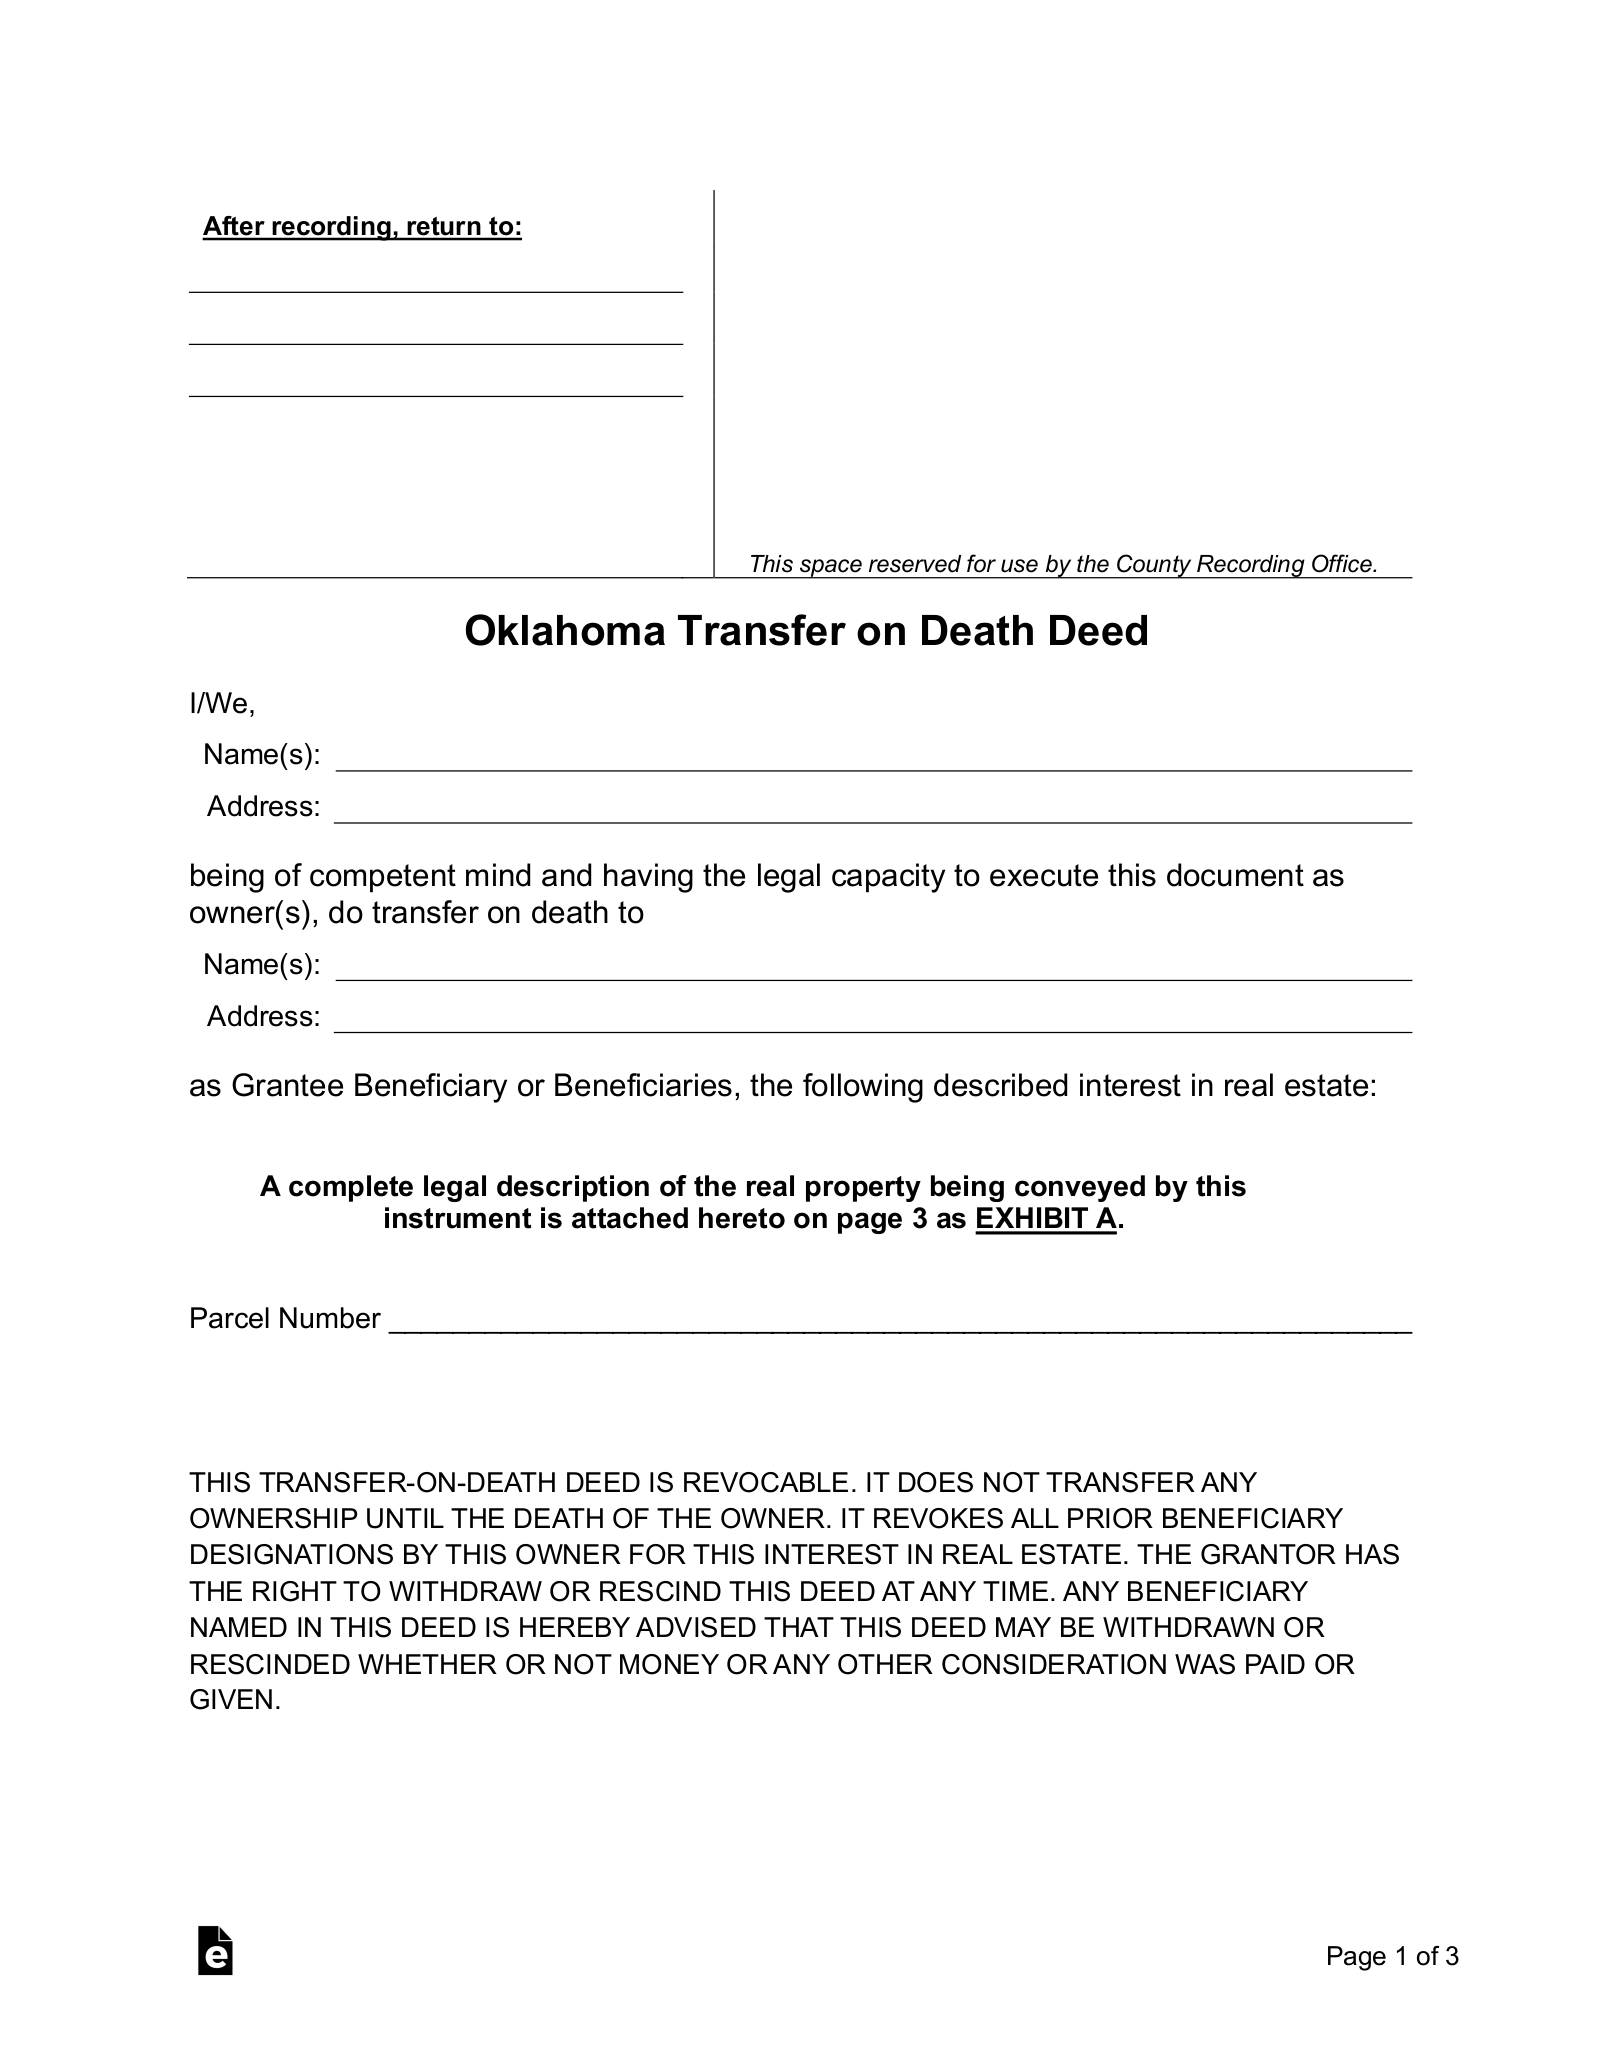 Oklahoma Transfer on Death Deed